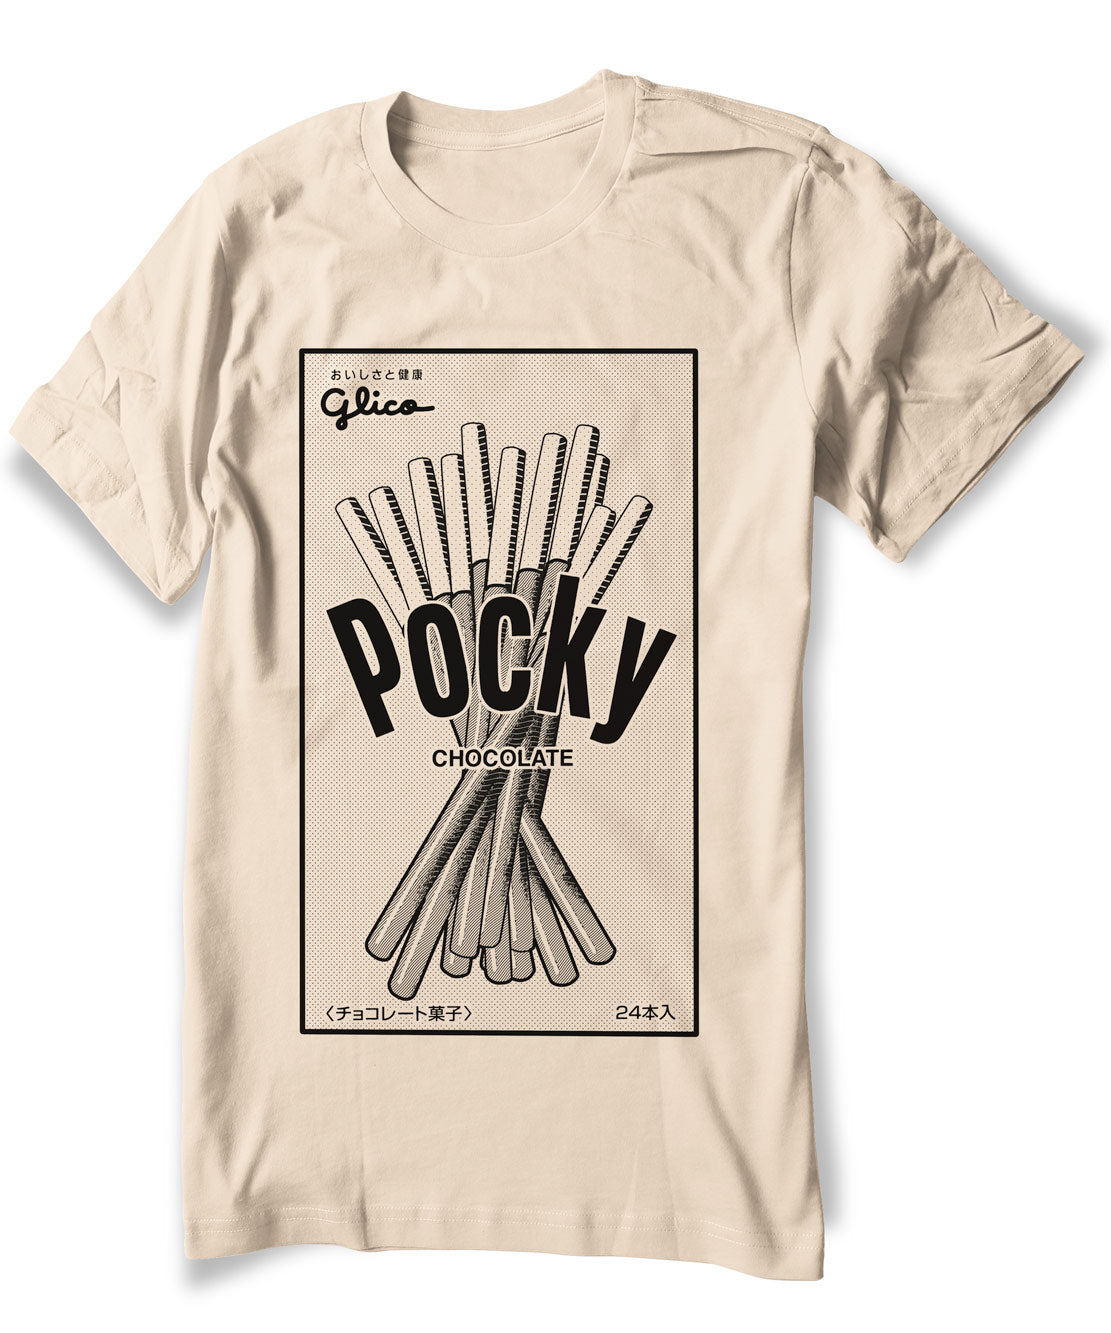 Pocky shirt